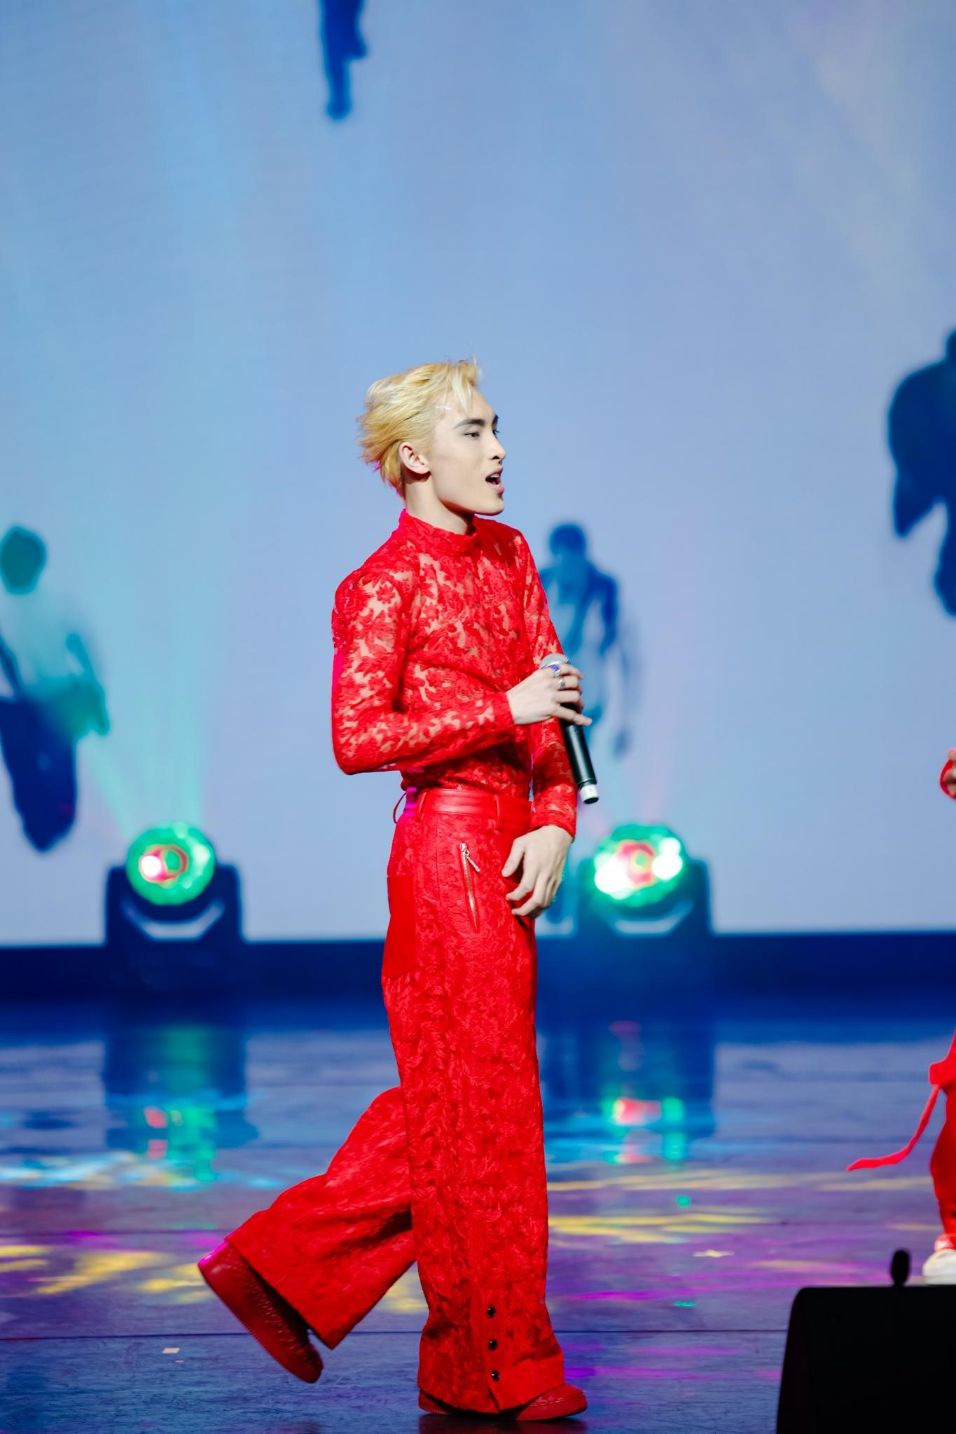 Wren Evans và MV Gặp may của anh cũng đang là đề cử sáng giá cho cúp Best Music Video Đêm trao giải Asian Television Awards 2022: Trấn Thành trao cúp cùng ngôi sao Hồng Kông